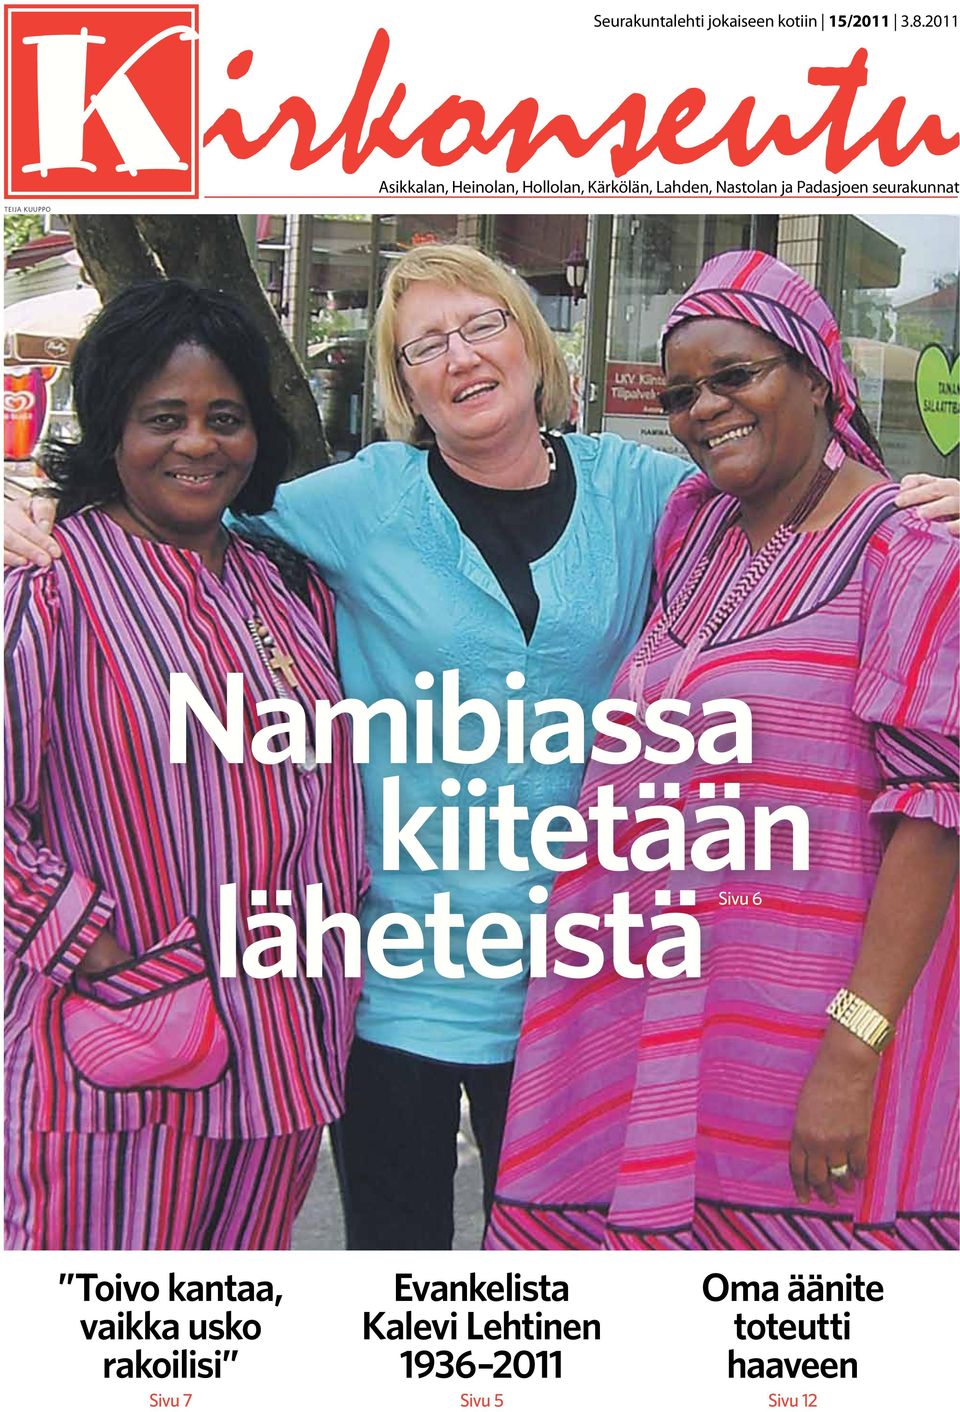 seurakunnat teija kuuppo Namibiassa kiitetään läheteistäsivu 6 Toivo kantaa,